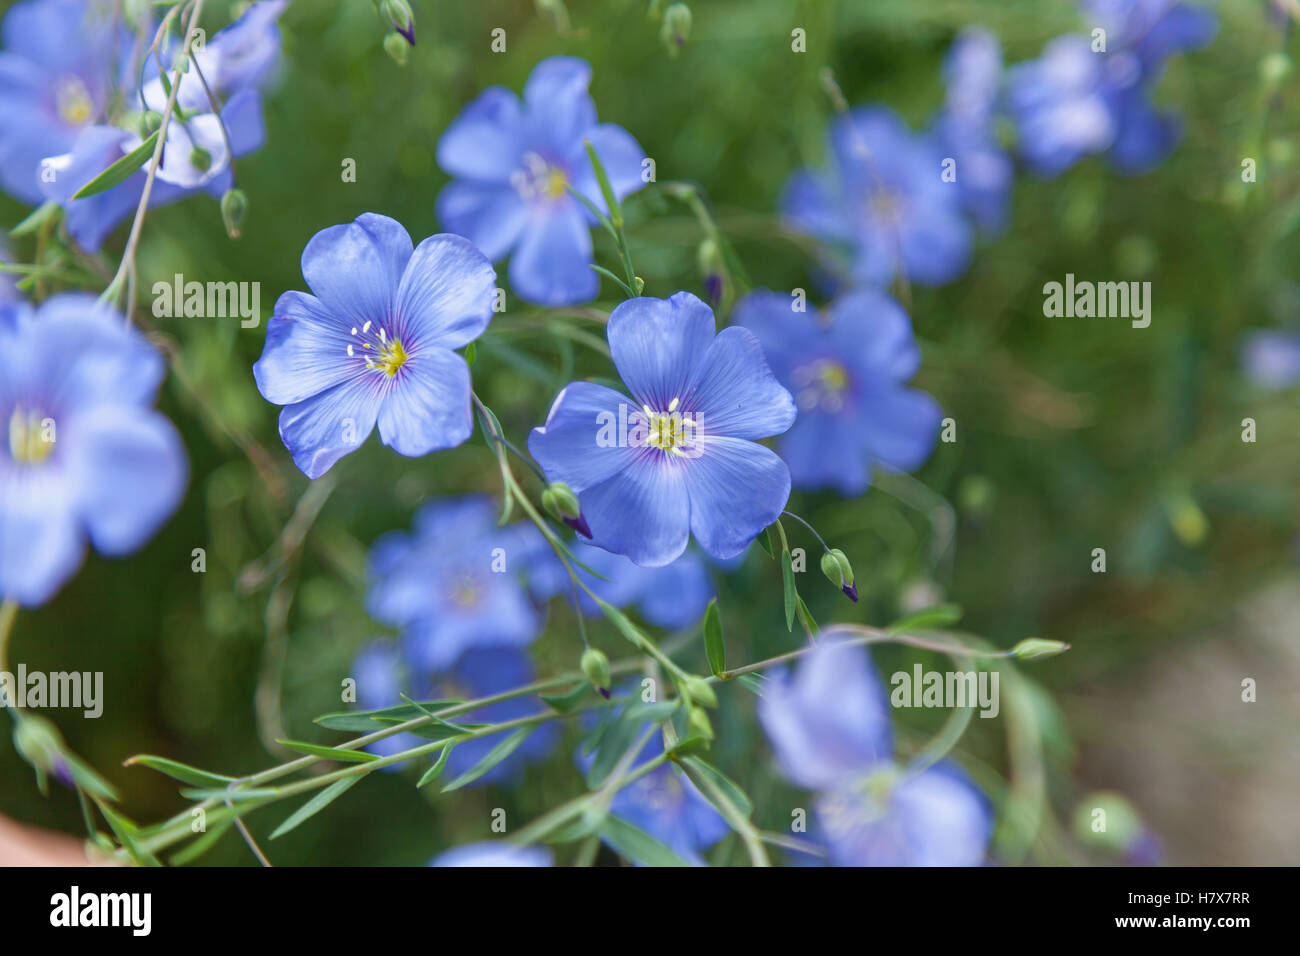 Blauer Flachs blüht. Blühenden Flachs mit zarten, luftigen Blüten himmlische Farbe blau Stockfoto